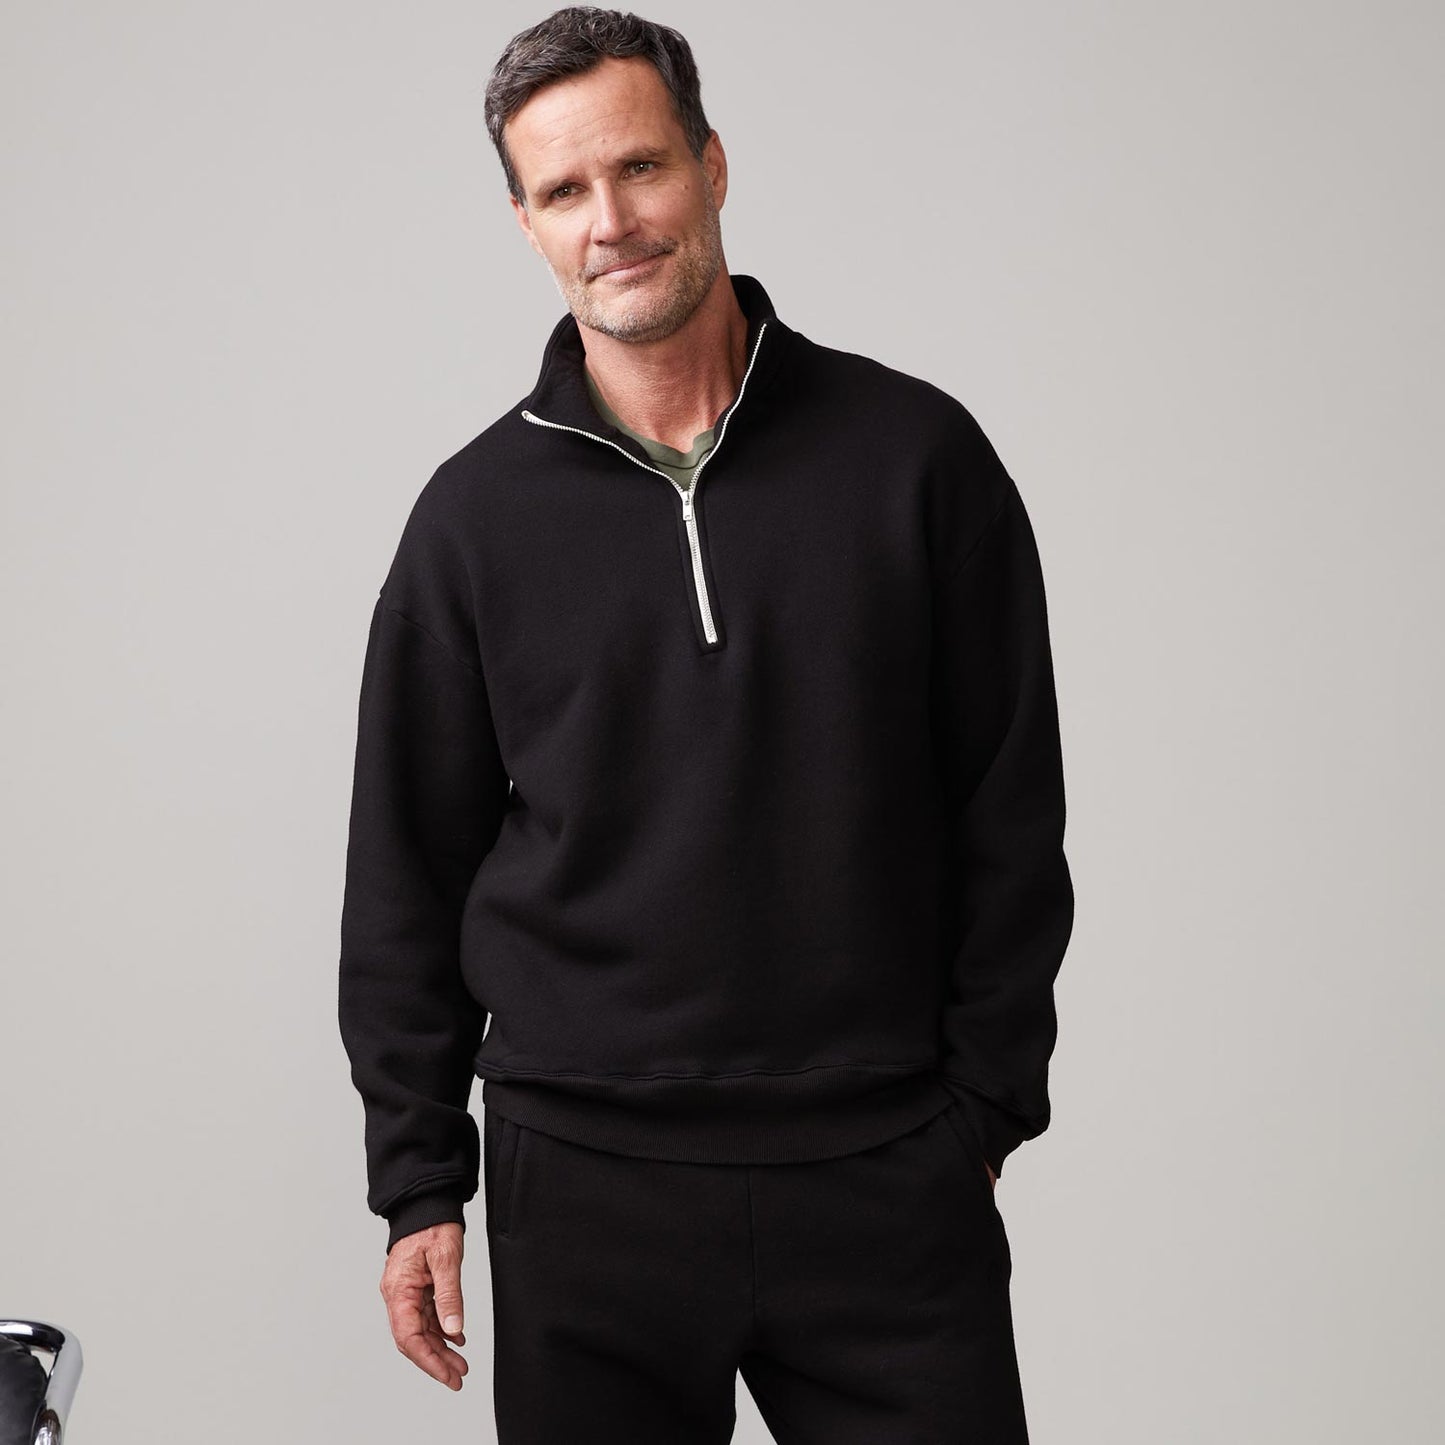 Front view of model wearing the half zip sweatshirt in black.